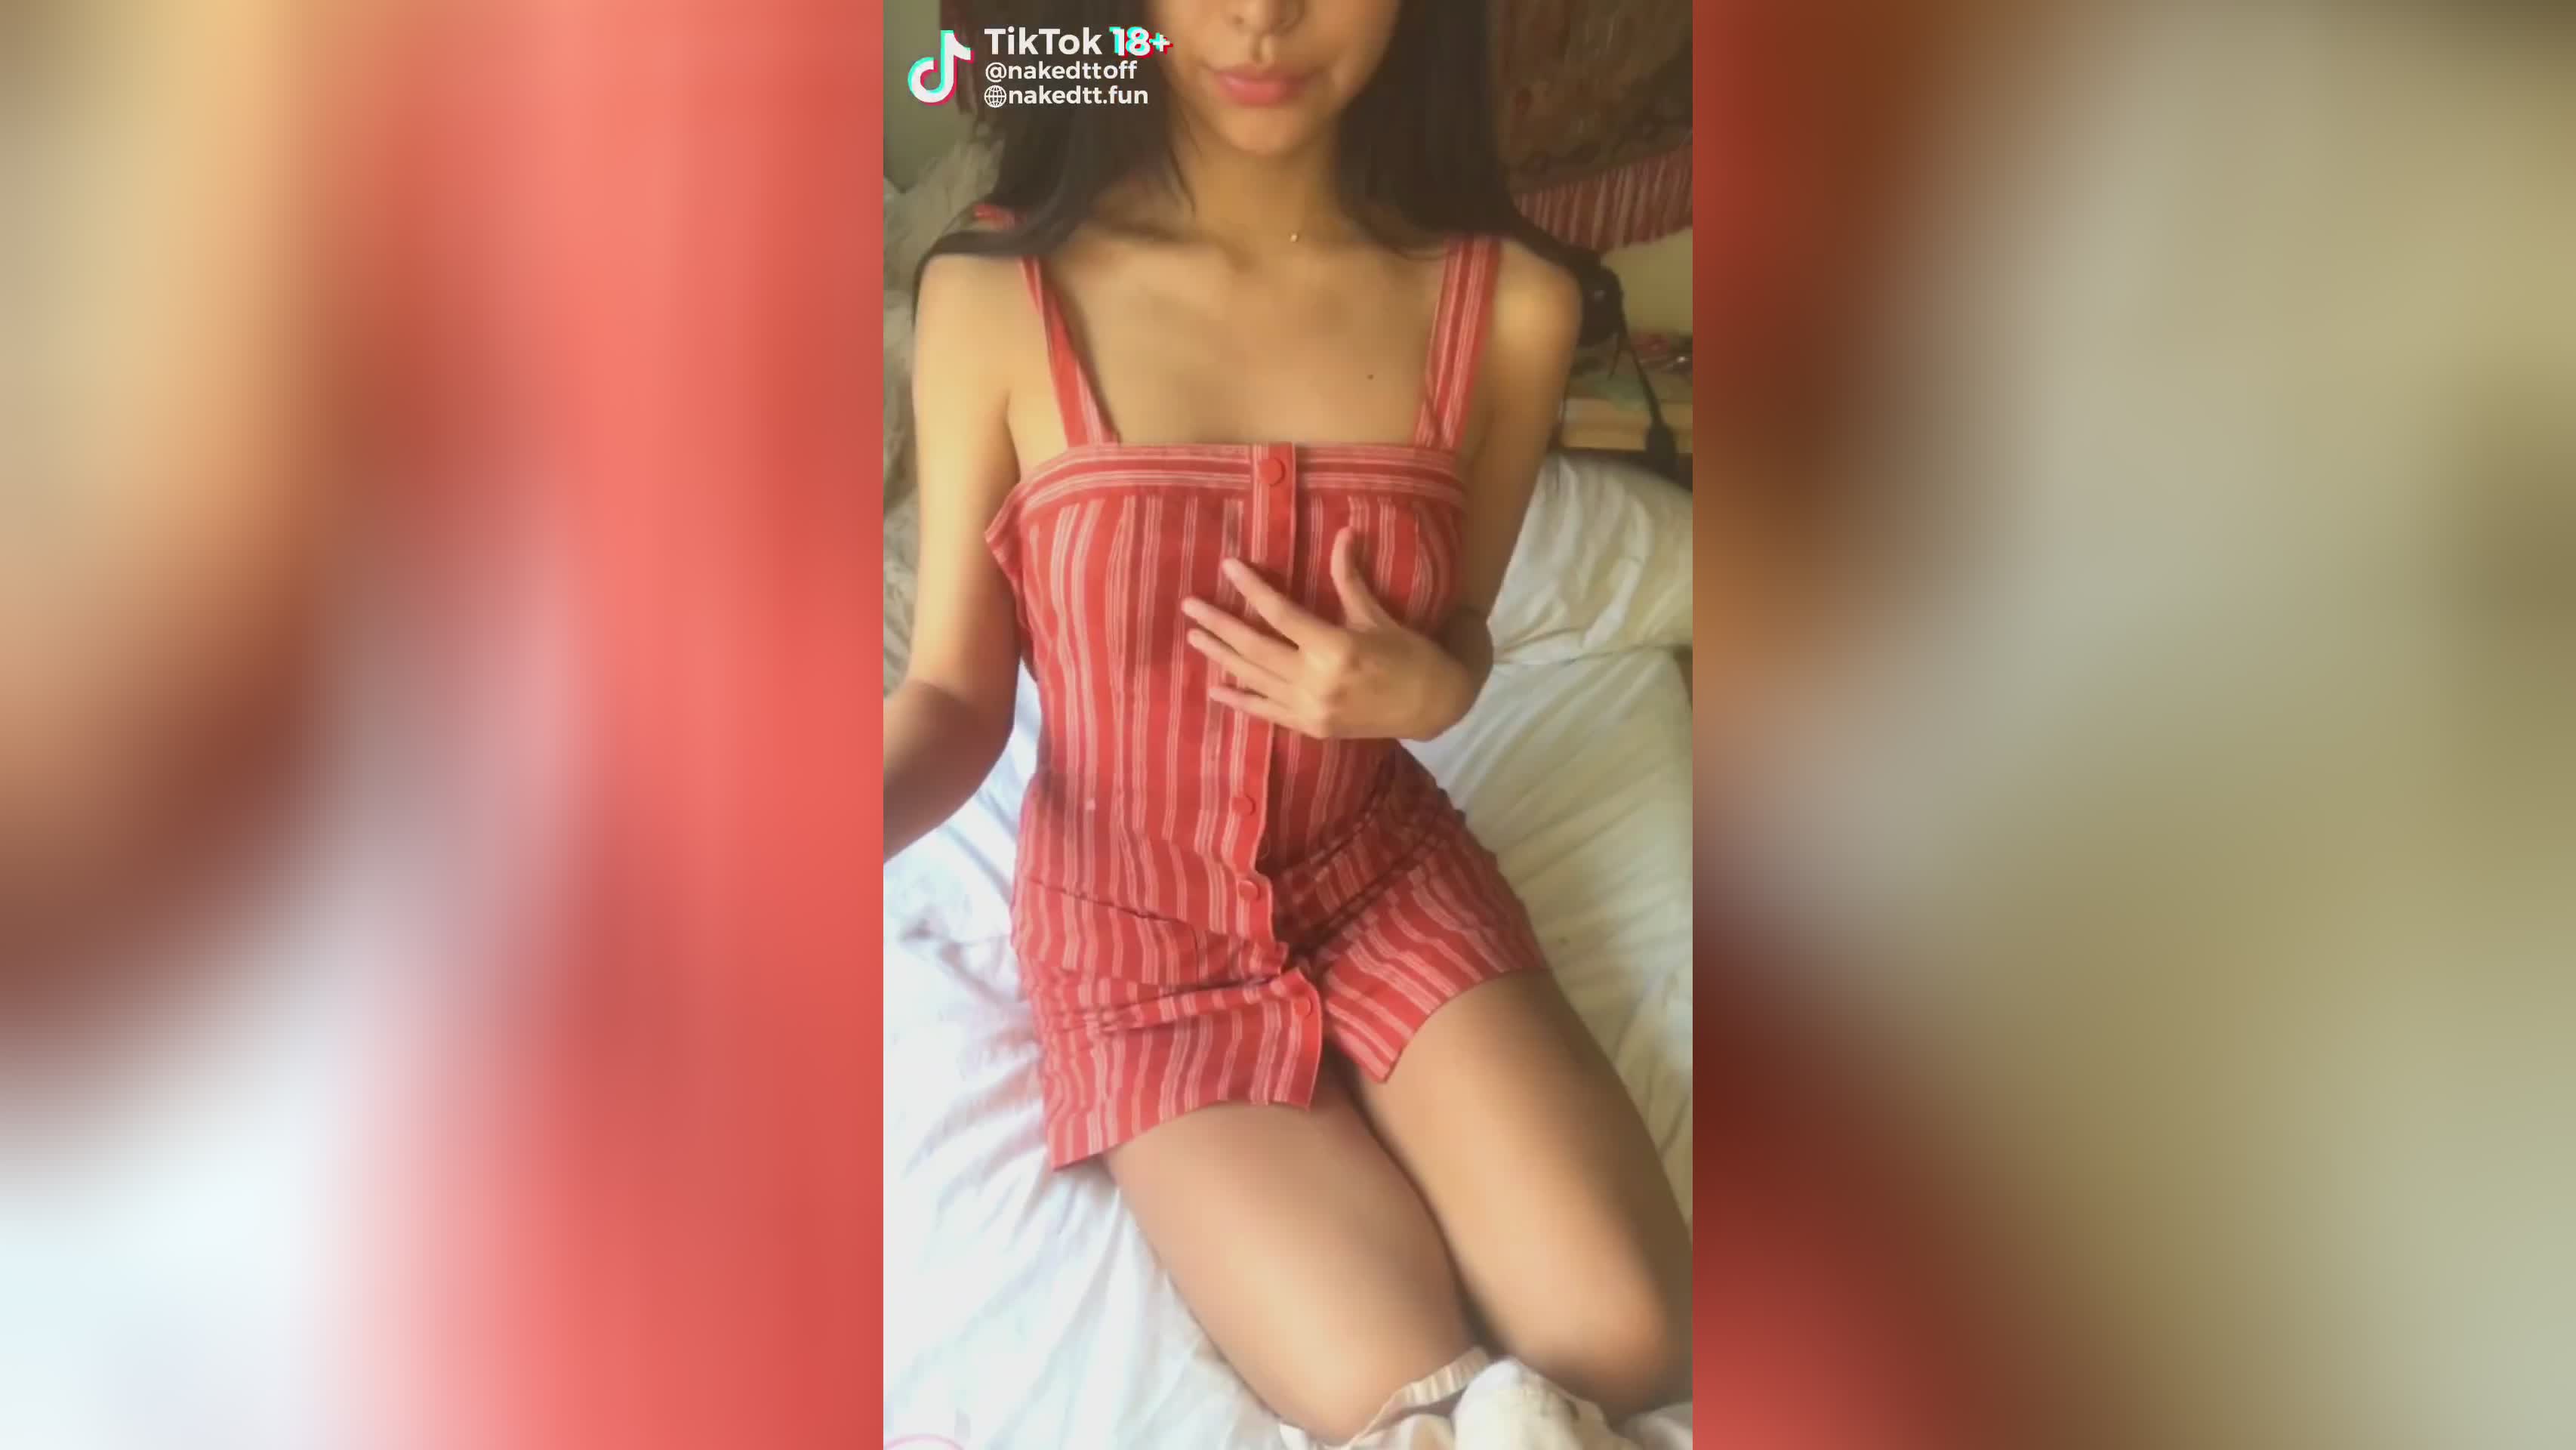 Dressing off kindly - Tik Tok (Italian small tits slut wants sex) - Videos 